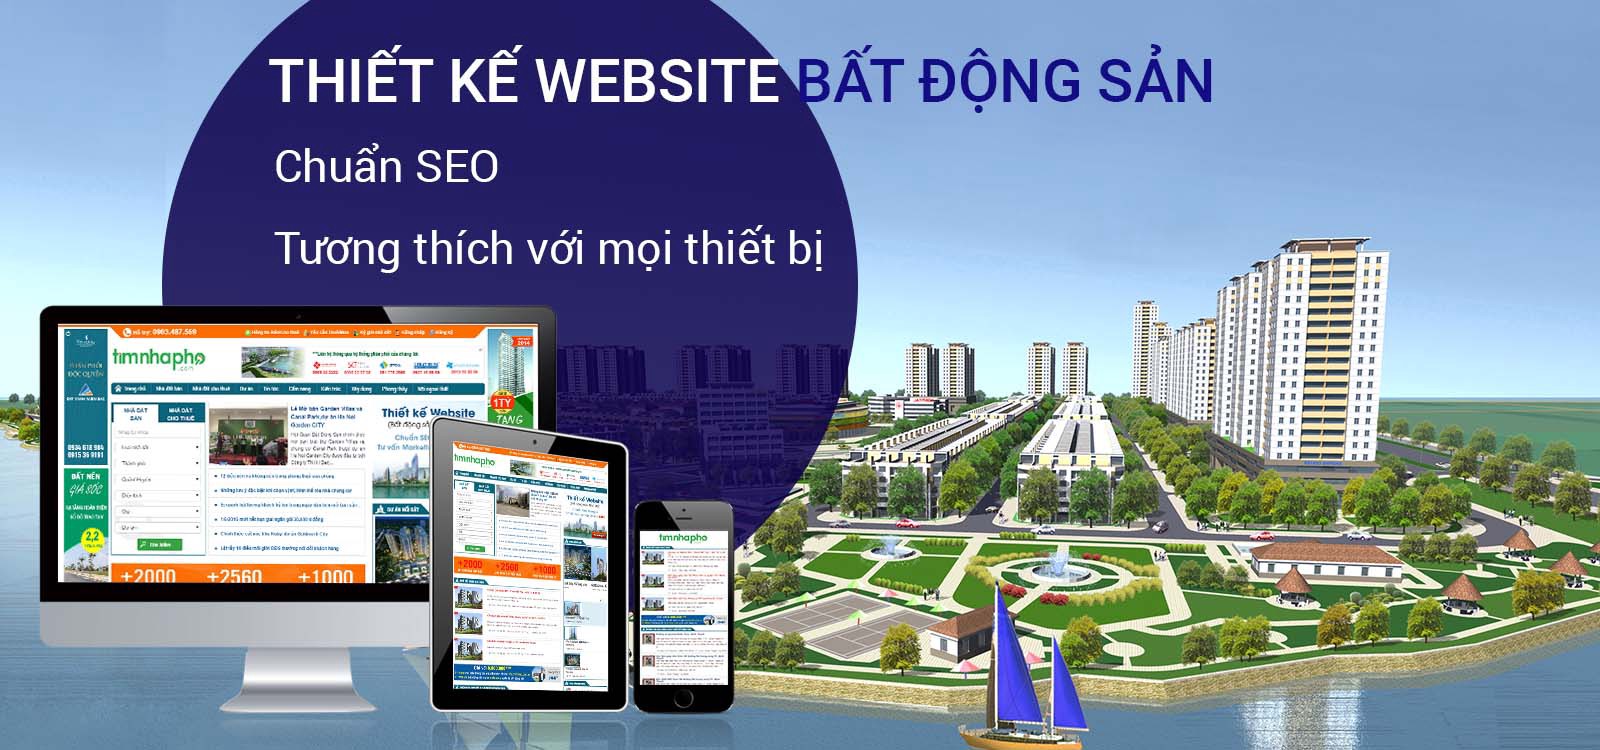 thiết kế website bất động sản Hưng Yên